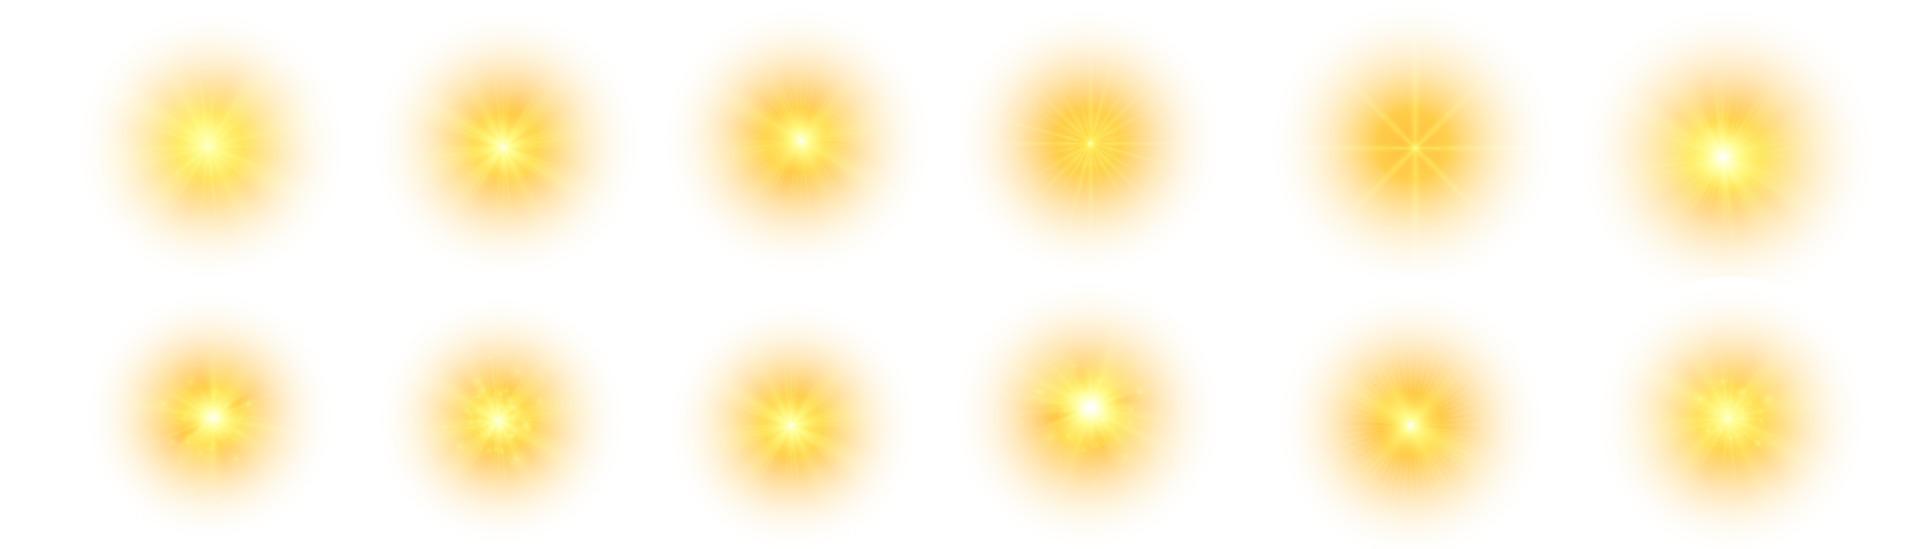 sol amarelo, um flash, um brilho suave sem raios que se afastam. estrela brilhou com brilhos isolados no fundo branco. ilustração em vetor de respingo amarelo abstrato.